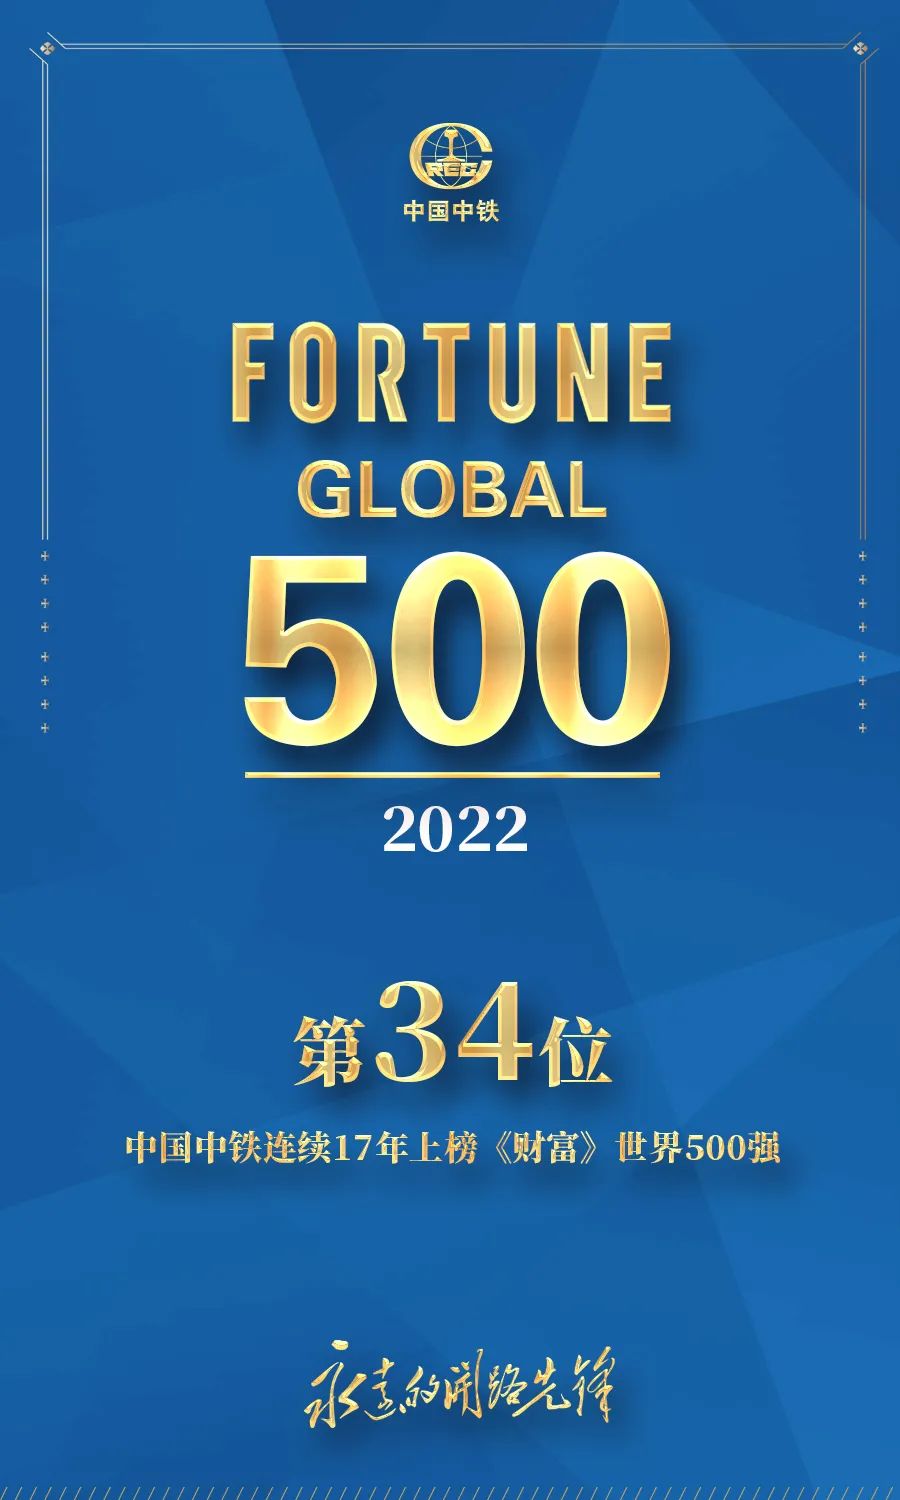 中国中铁名列2022年《财富》世界500强第34位、中国500强第5位